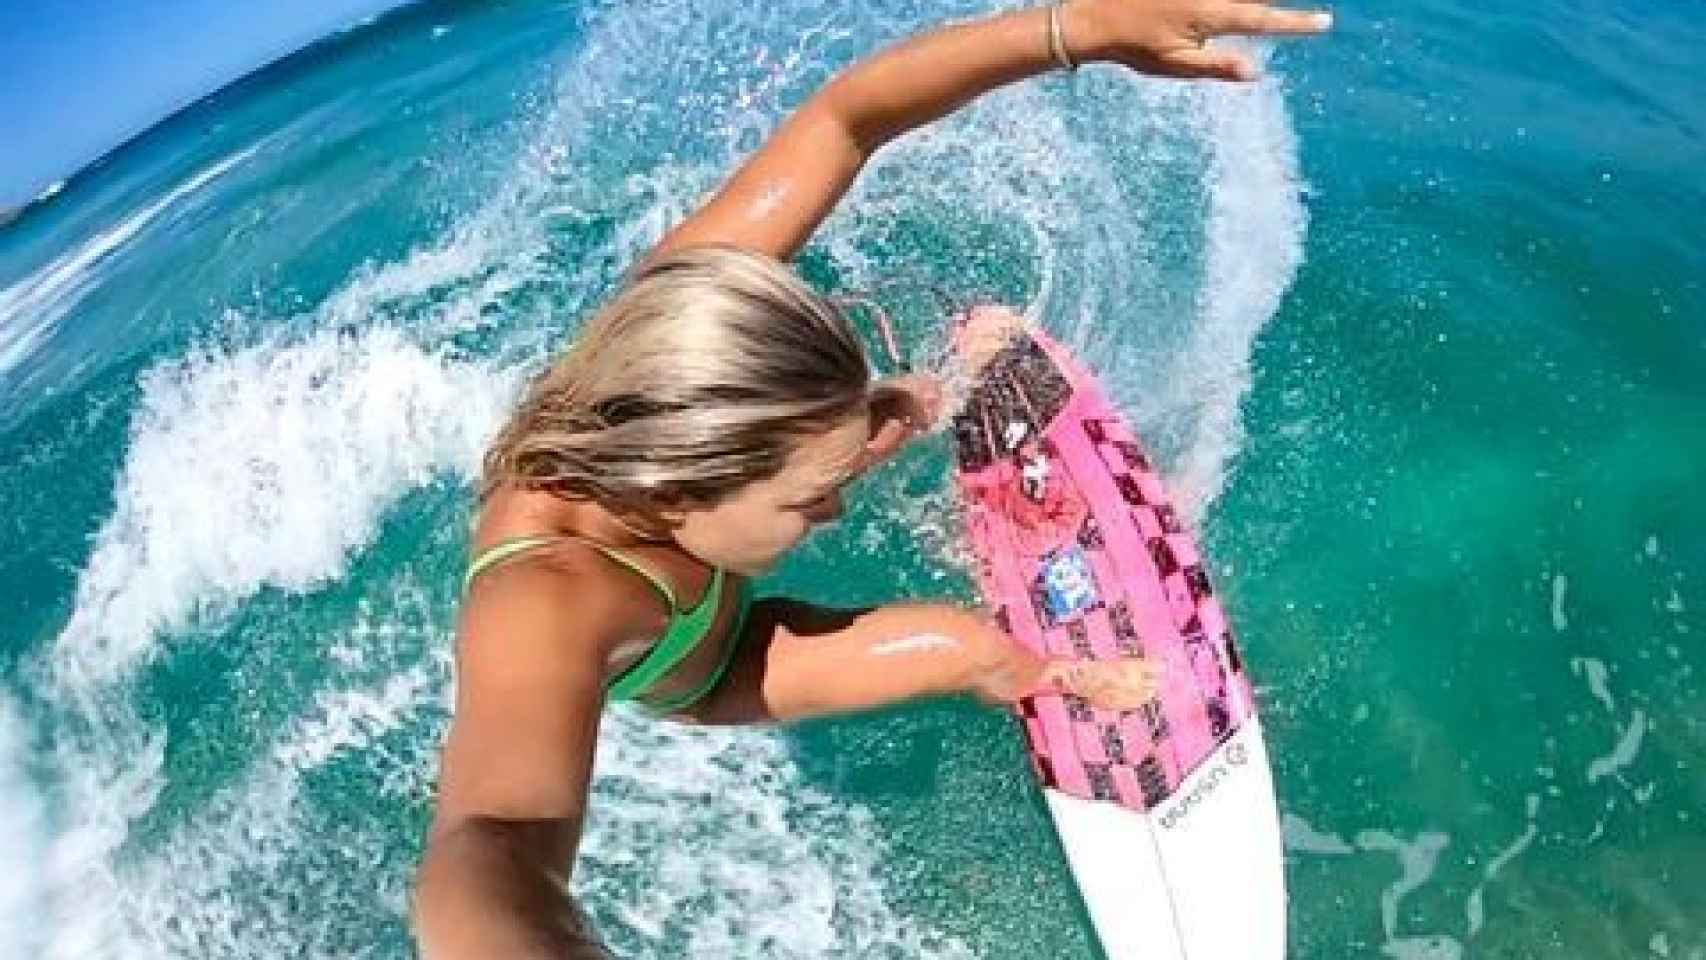 Felicity Palmateer, 'Flick' la surfista y artista australiana